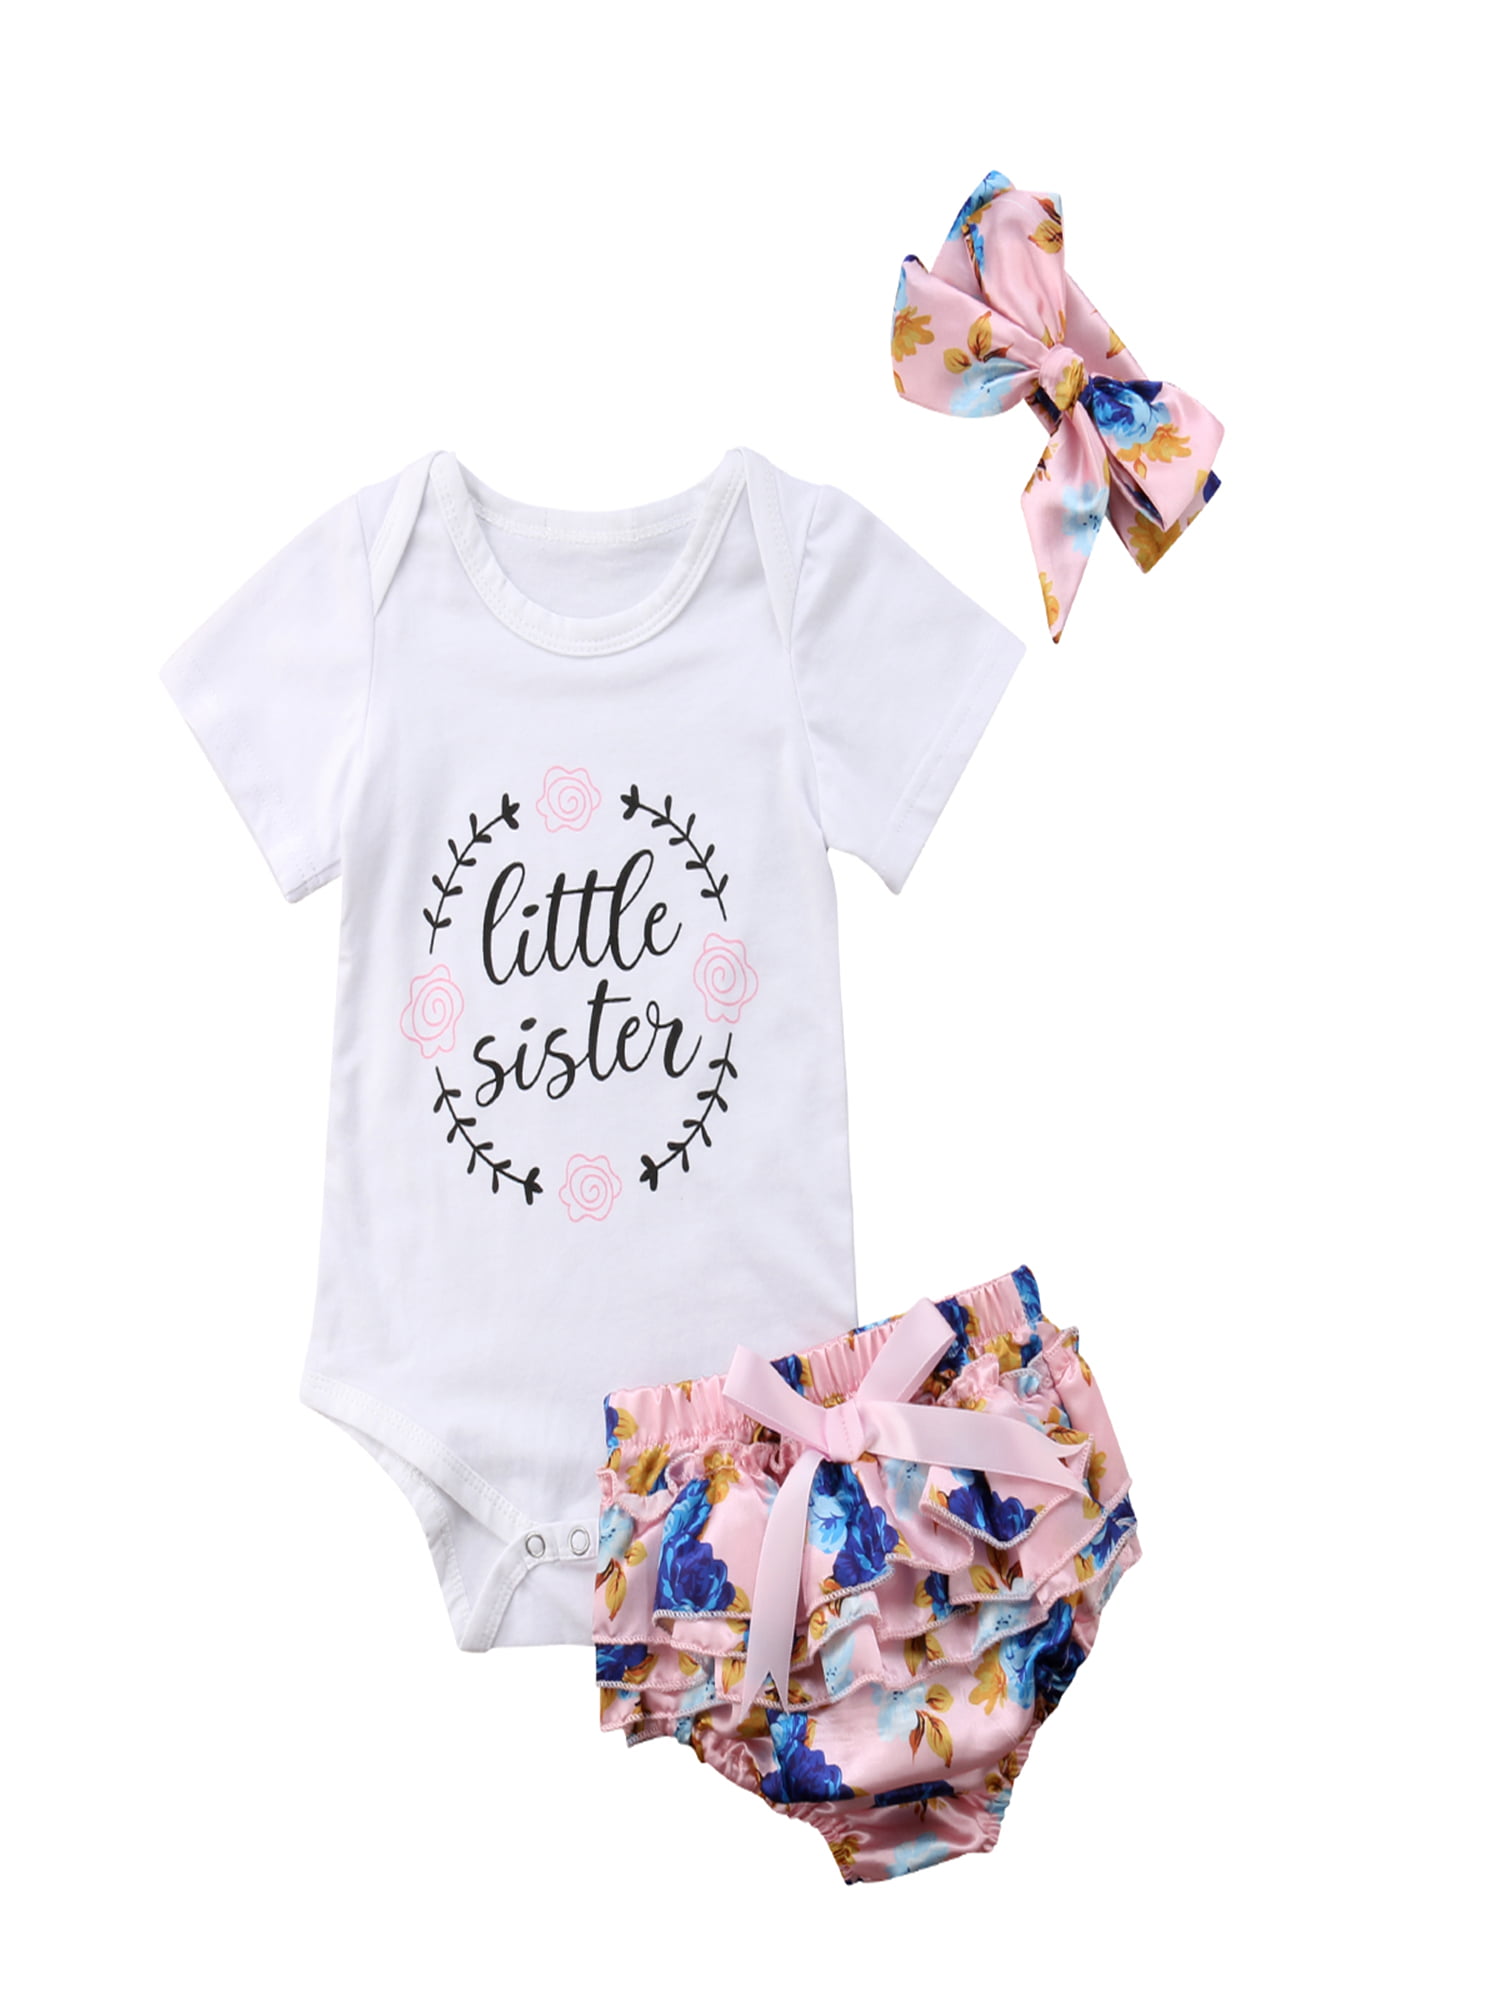 Newborn Infant Baby Girls Outfit Clothes Tops Romper Jumpsuit Bodysuit+Pants Set 